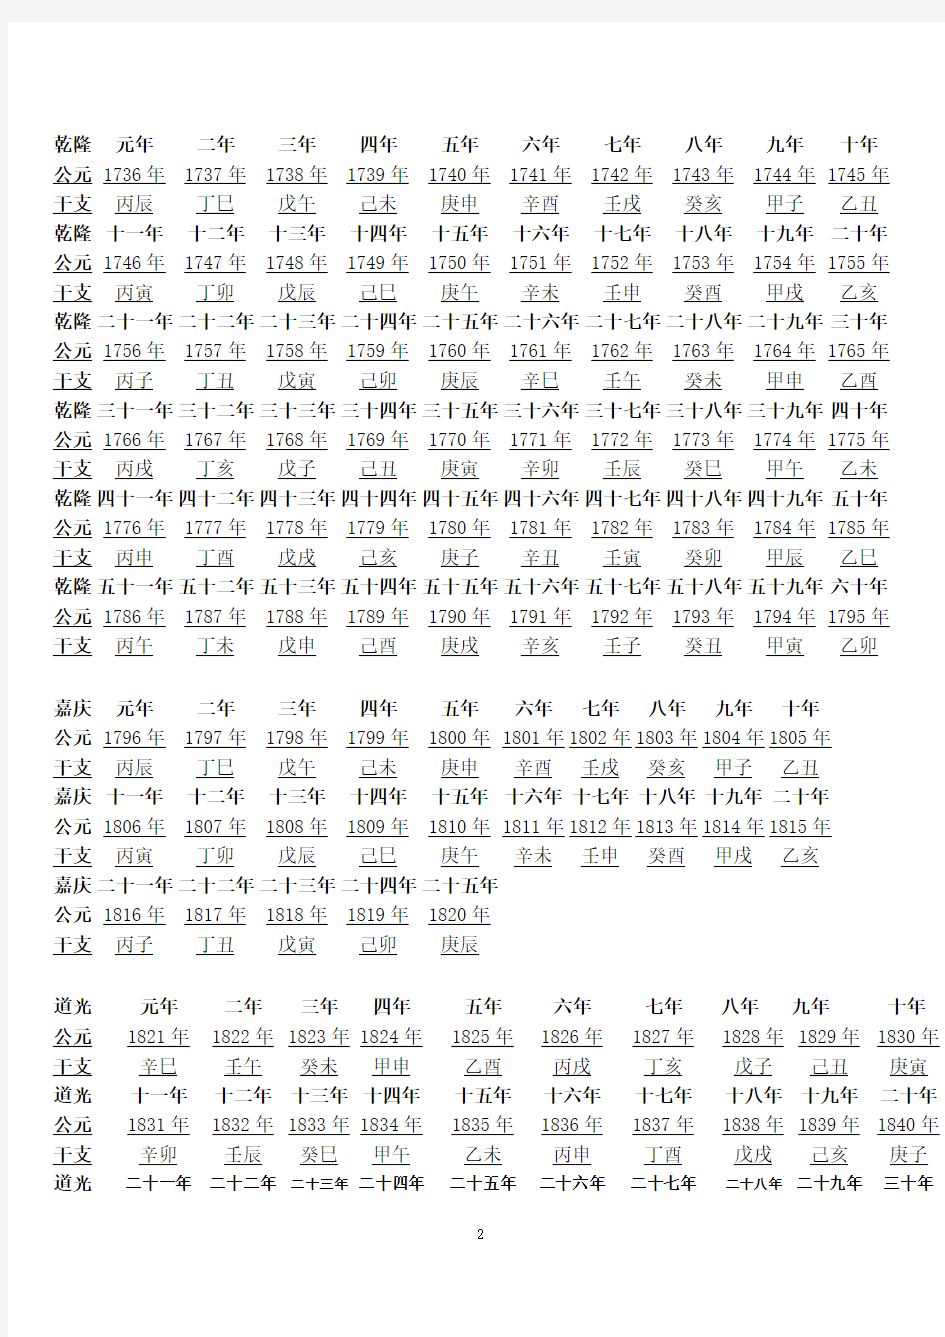 清朝公元干支年份对照表